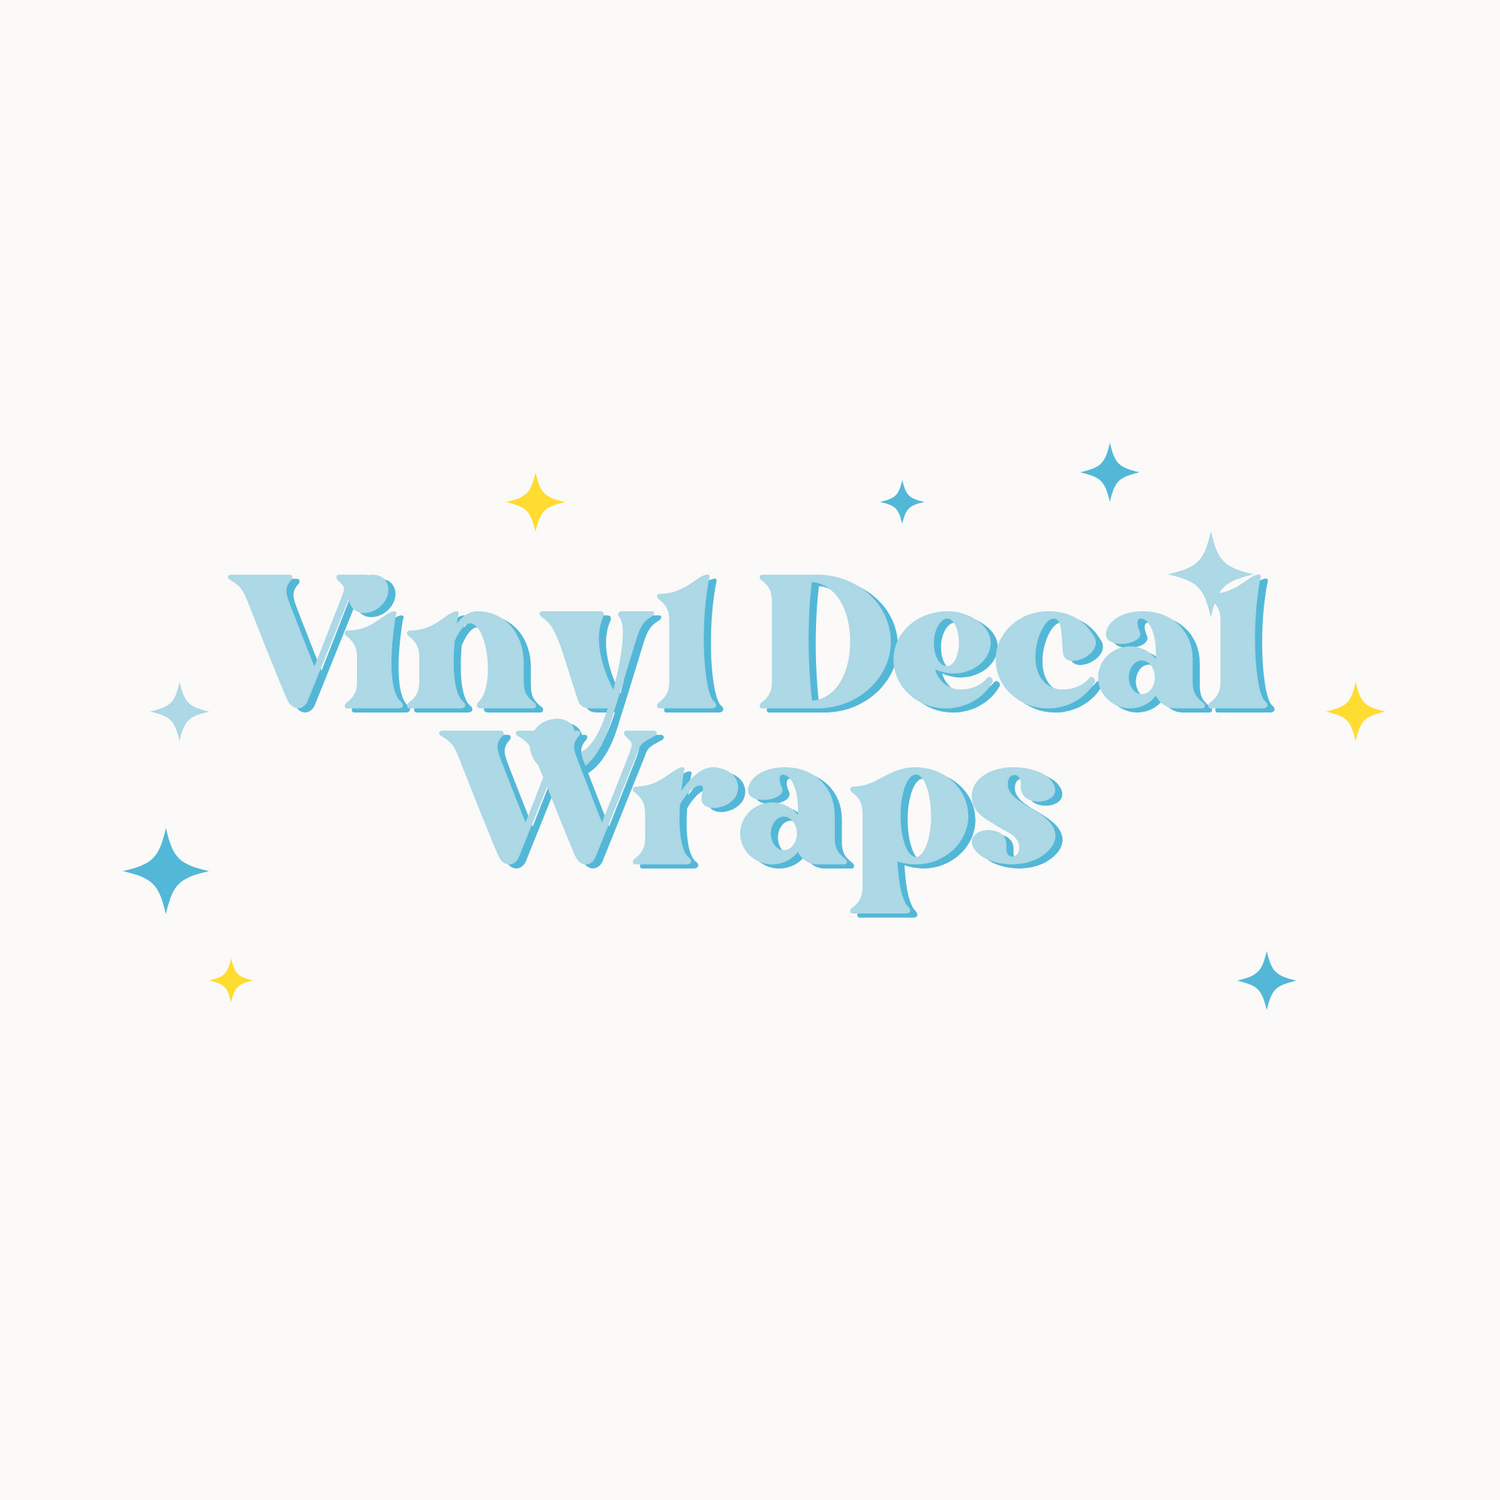 Vinyl Decal Wraps